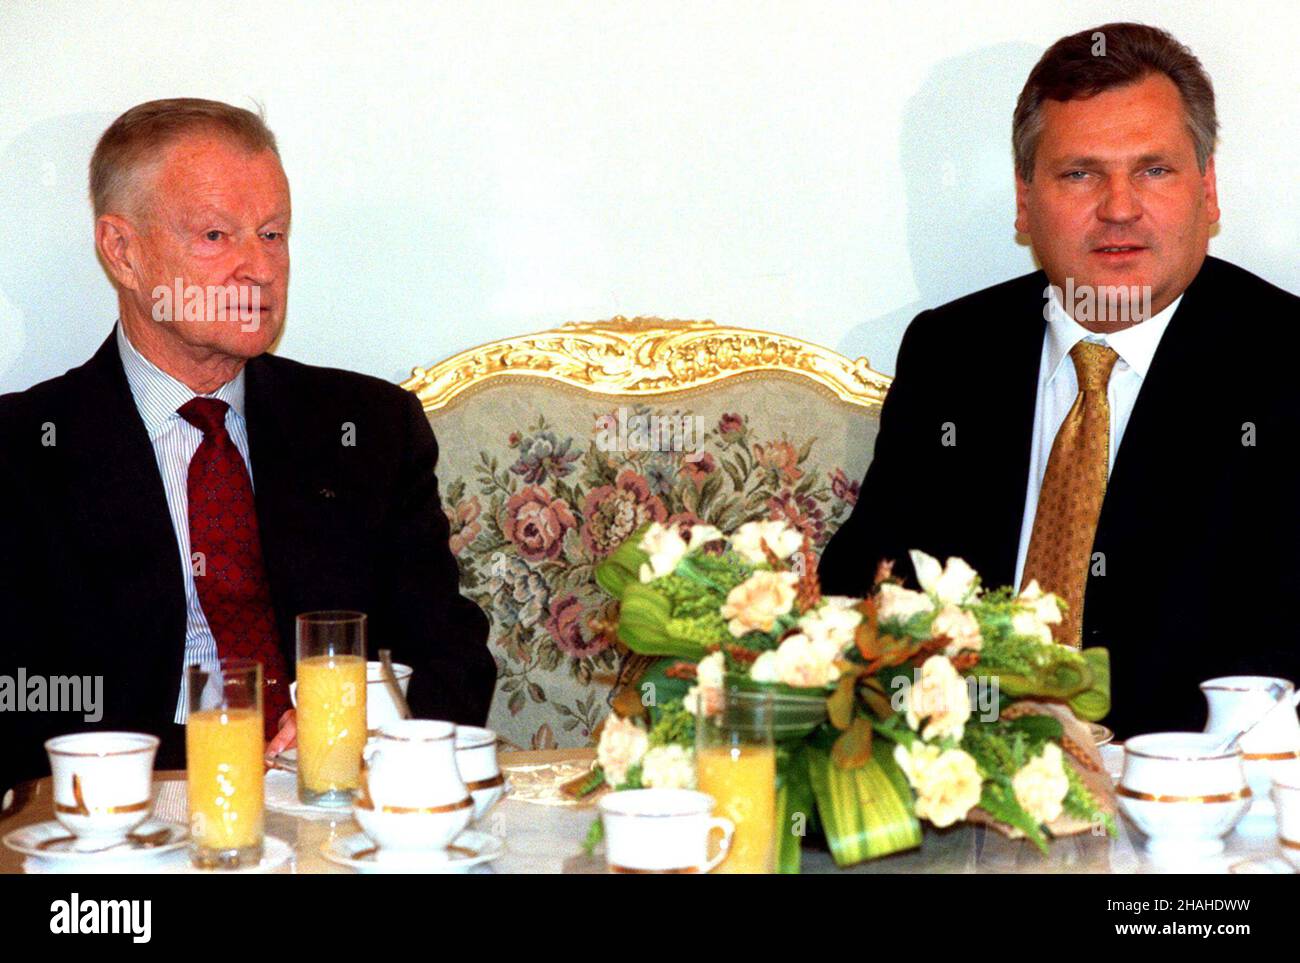 Warszawa, 30.05.2001. Prezydent Aleksander Kwaœniewski (P) przyj¹³ dziœ w Pa³acu Prezydenckim prof. Zbigniewa Brzeziñskiego (L).  (kru) PAP/Przemek Wierzchowski      Warsaw, 30.05.2001. President Aleksander Kwasniewski (R) and professor Zbigniew Brzezinski (L) during a meeting in Presidential Palce, Warsaw.  (kru) PAP/Przemek Wierzchowski Stock Photo